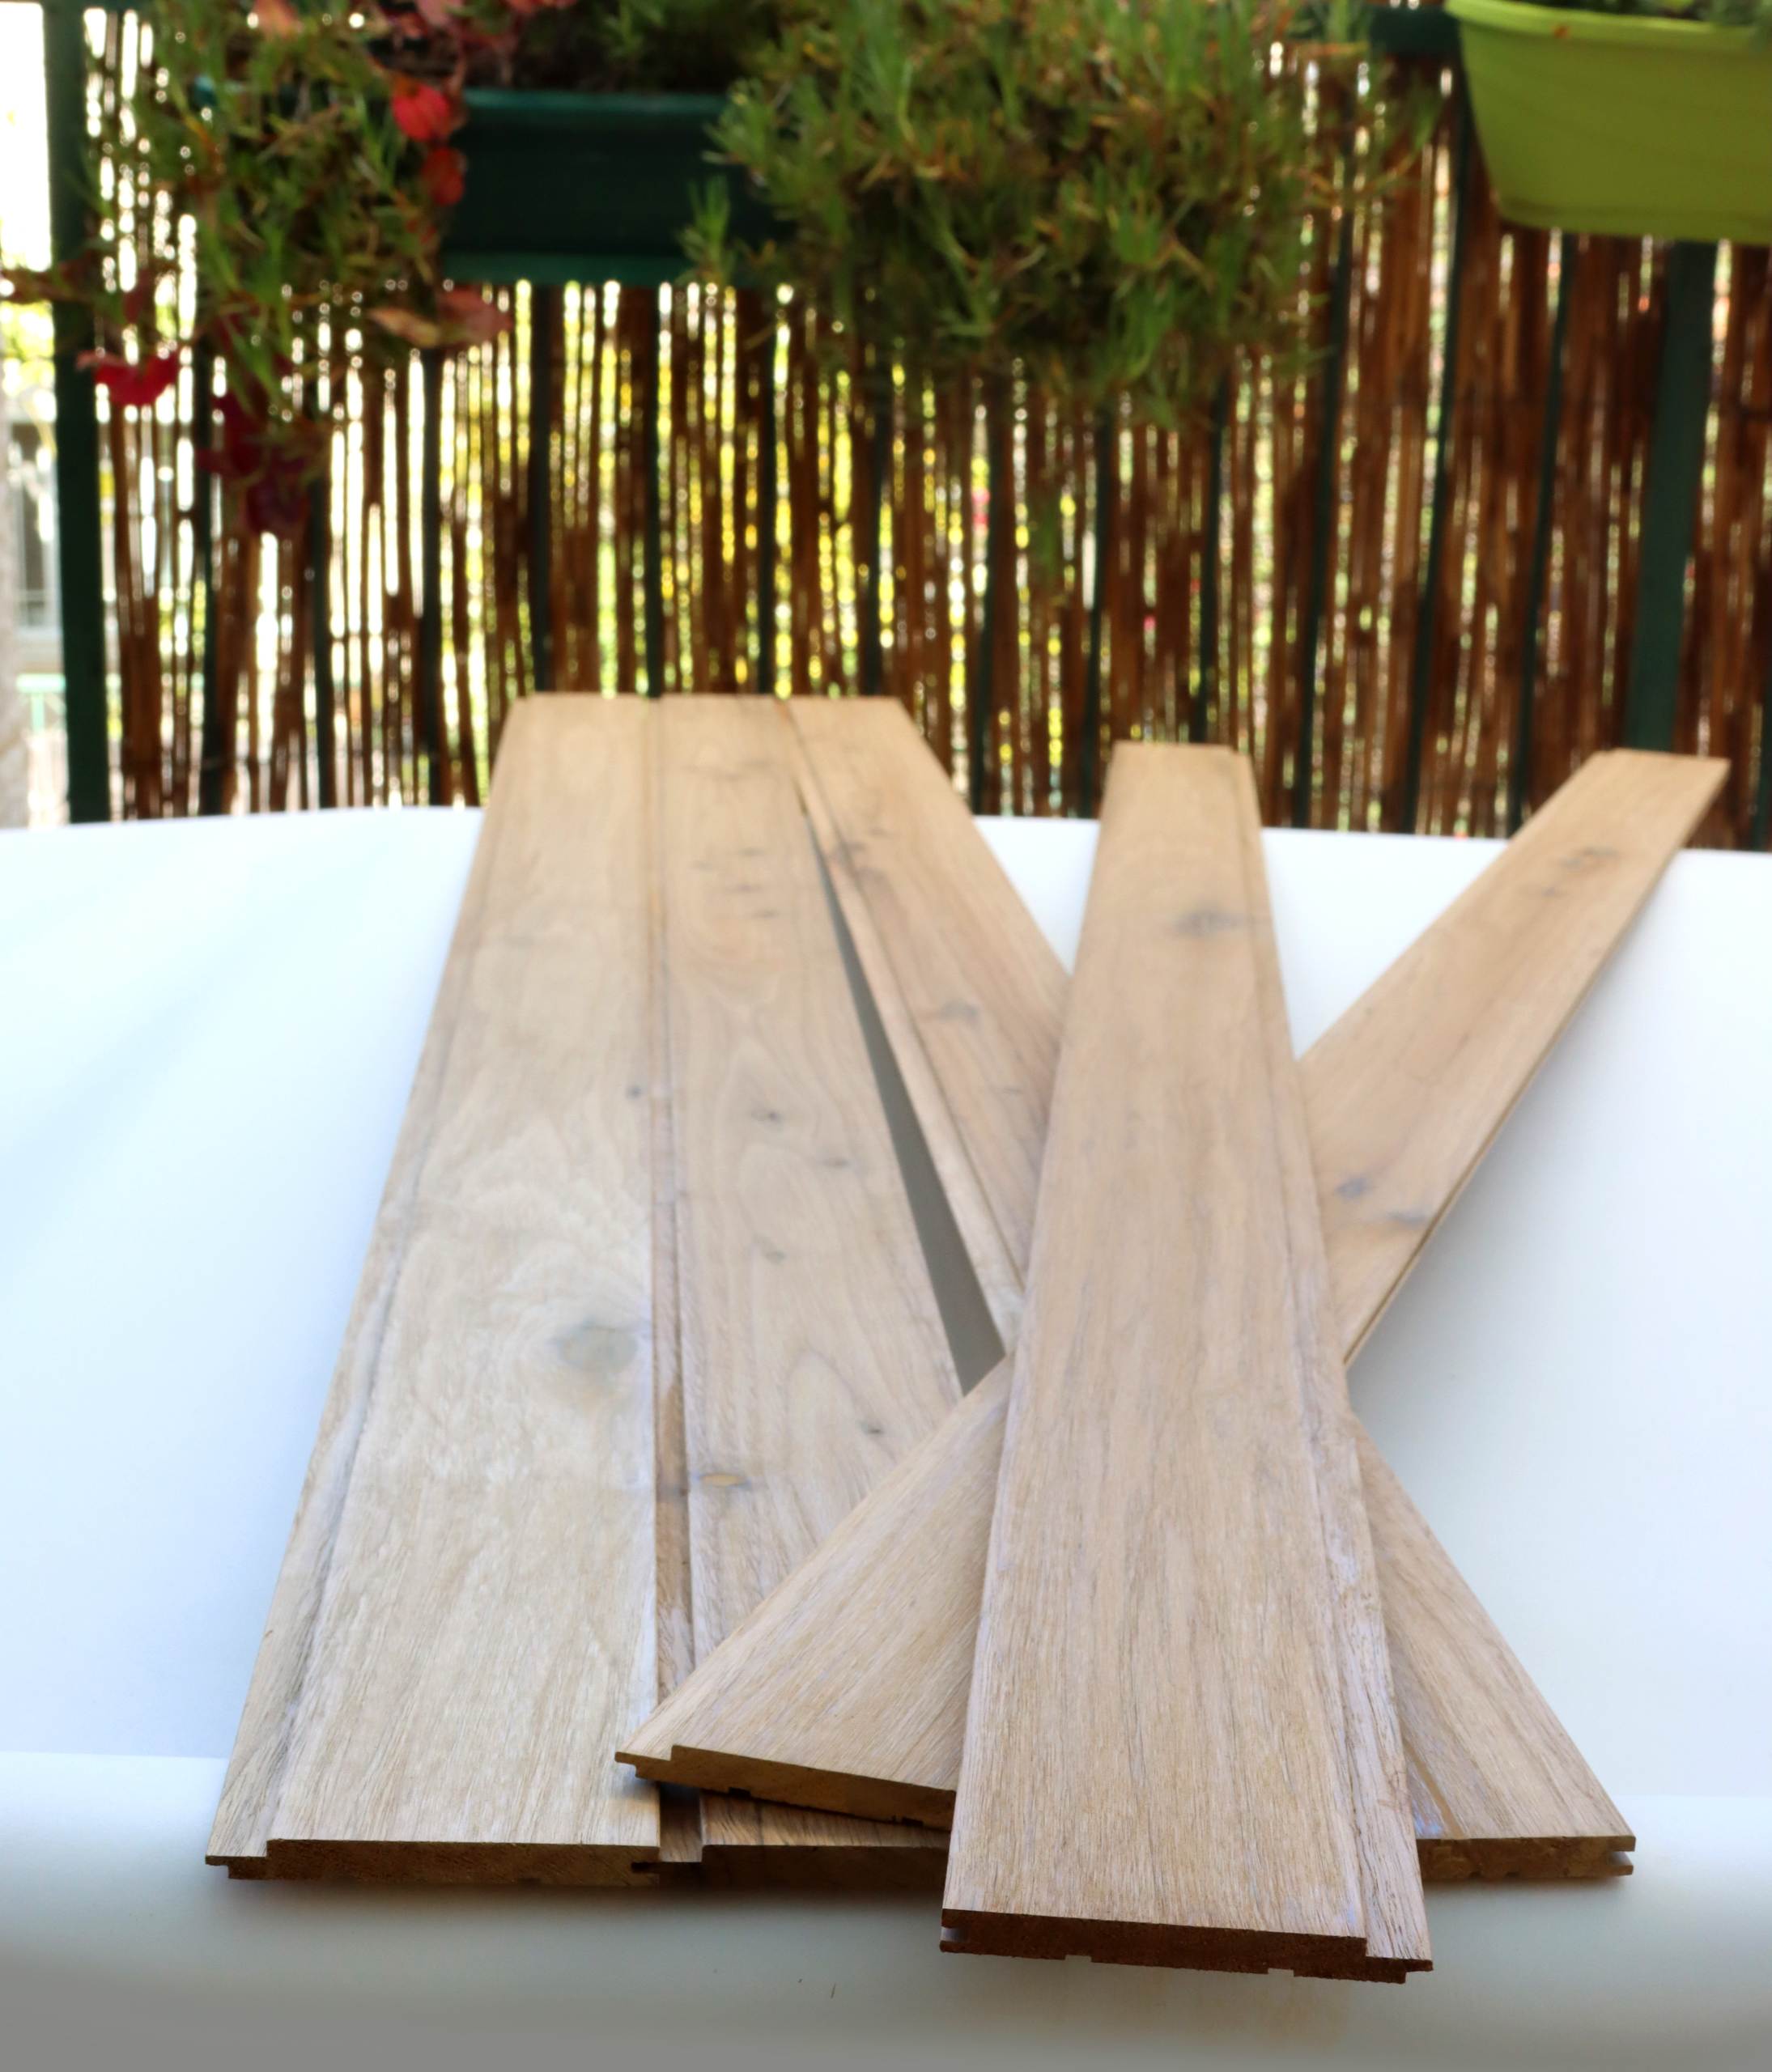 עץ אלון מלא יכול להיות משמש לחיפוי אפקטיבי של קירות ותקרות בסאונה, ןן וחוץ.